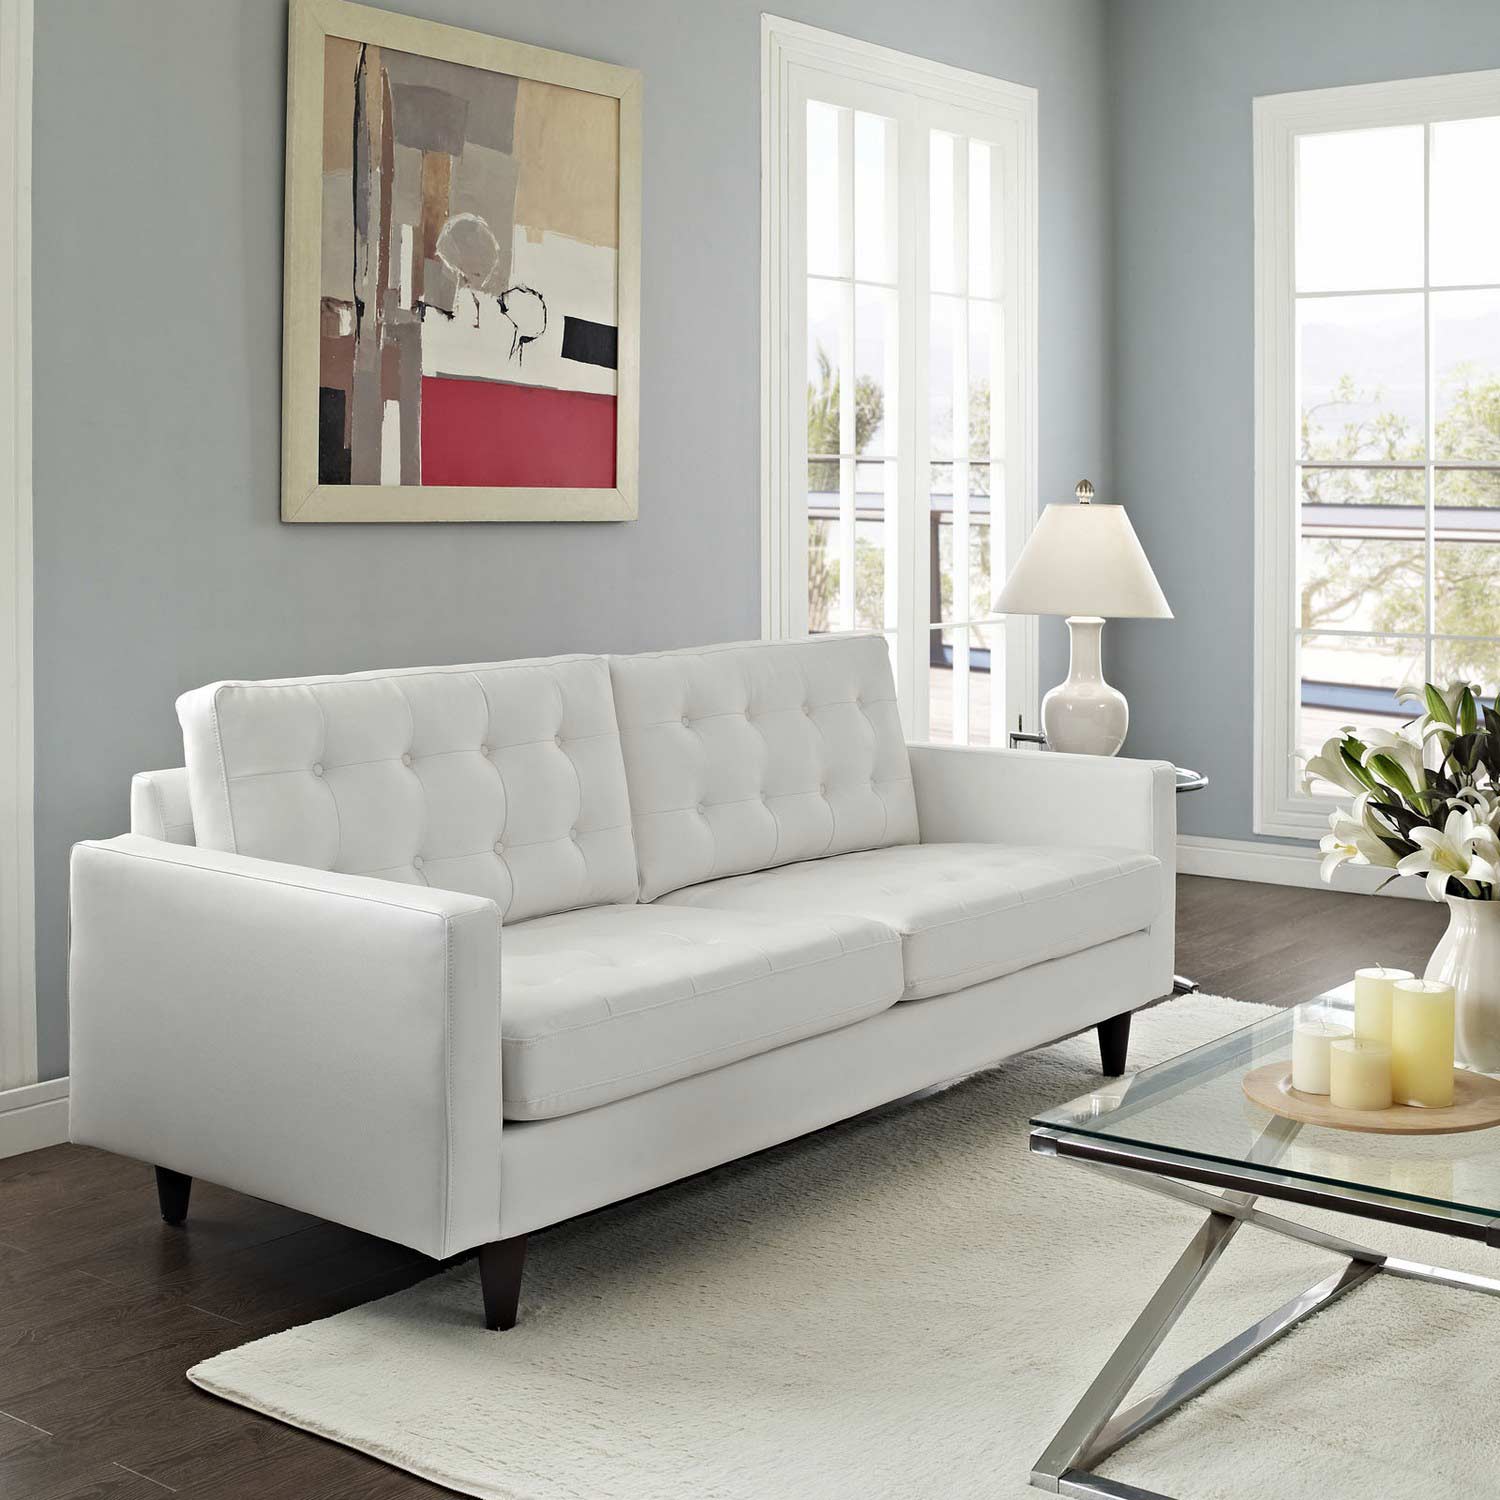 Modway Empress Leather Sofa - White